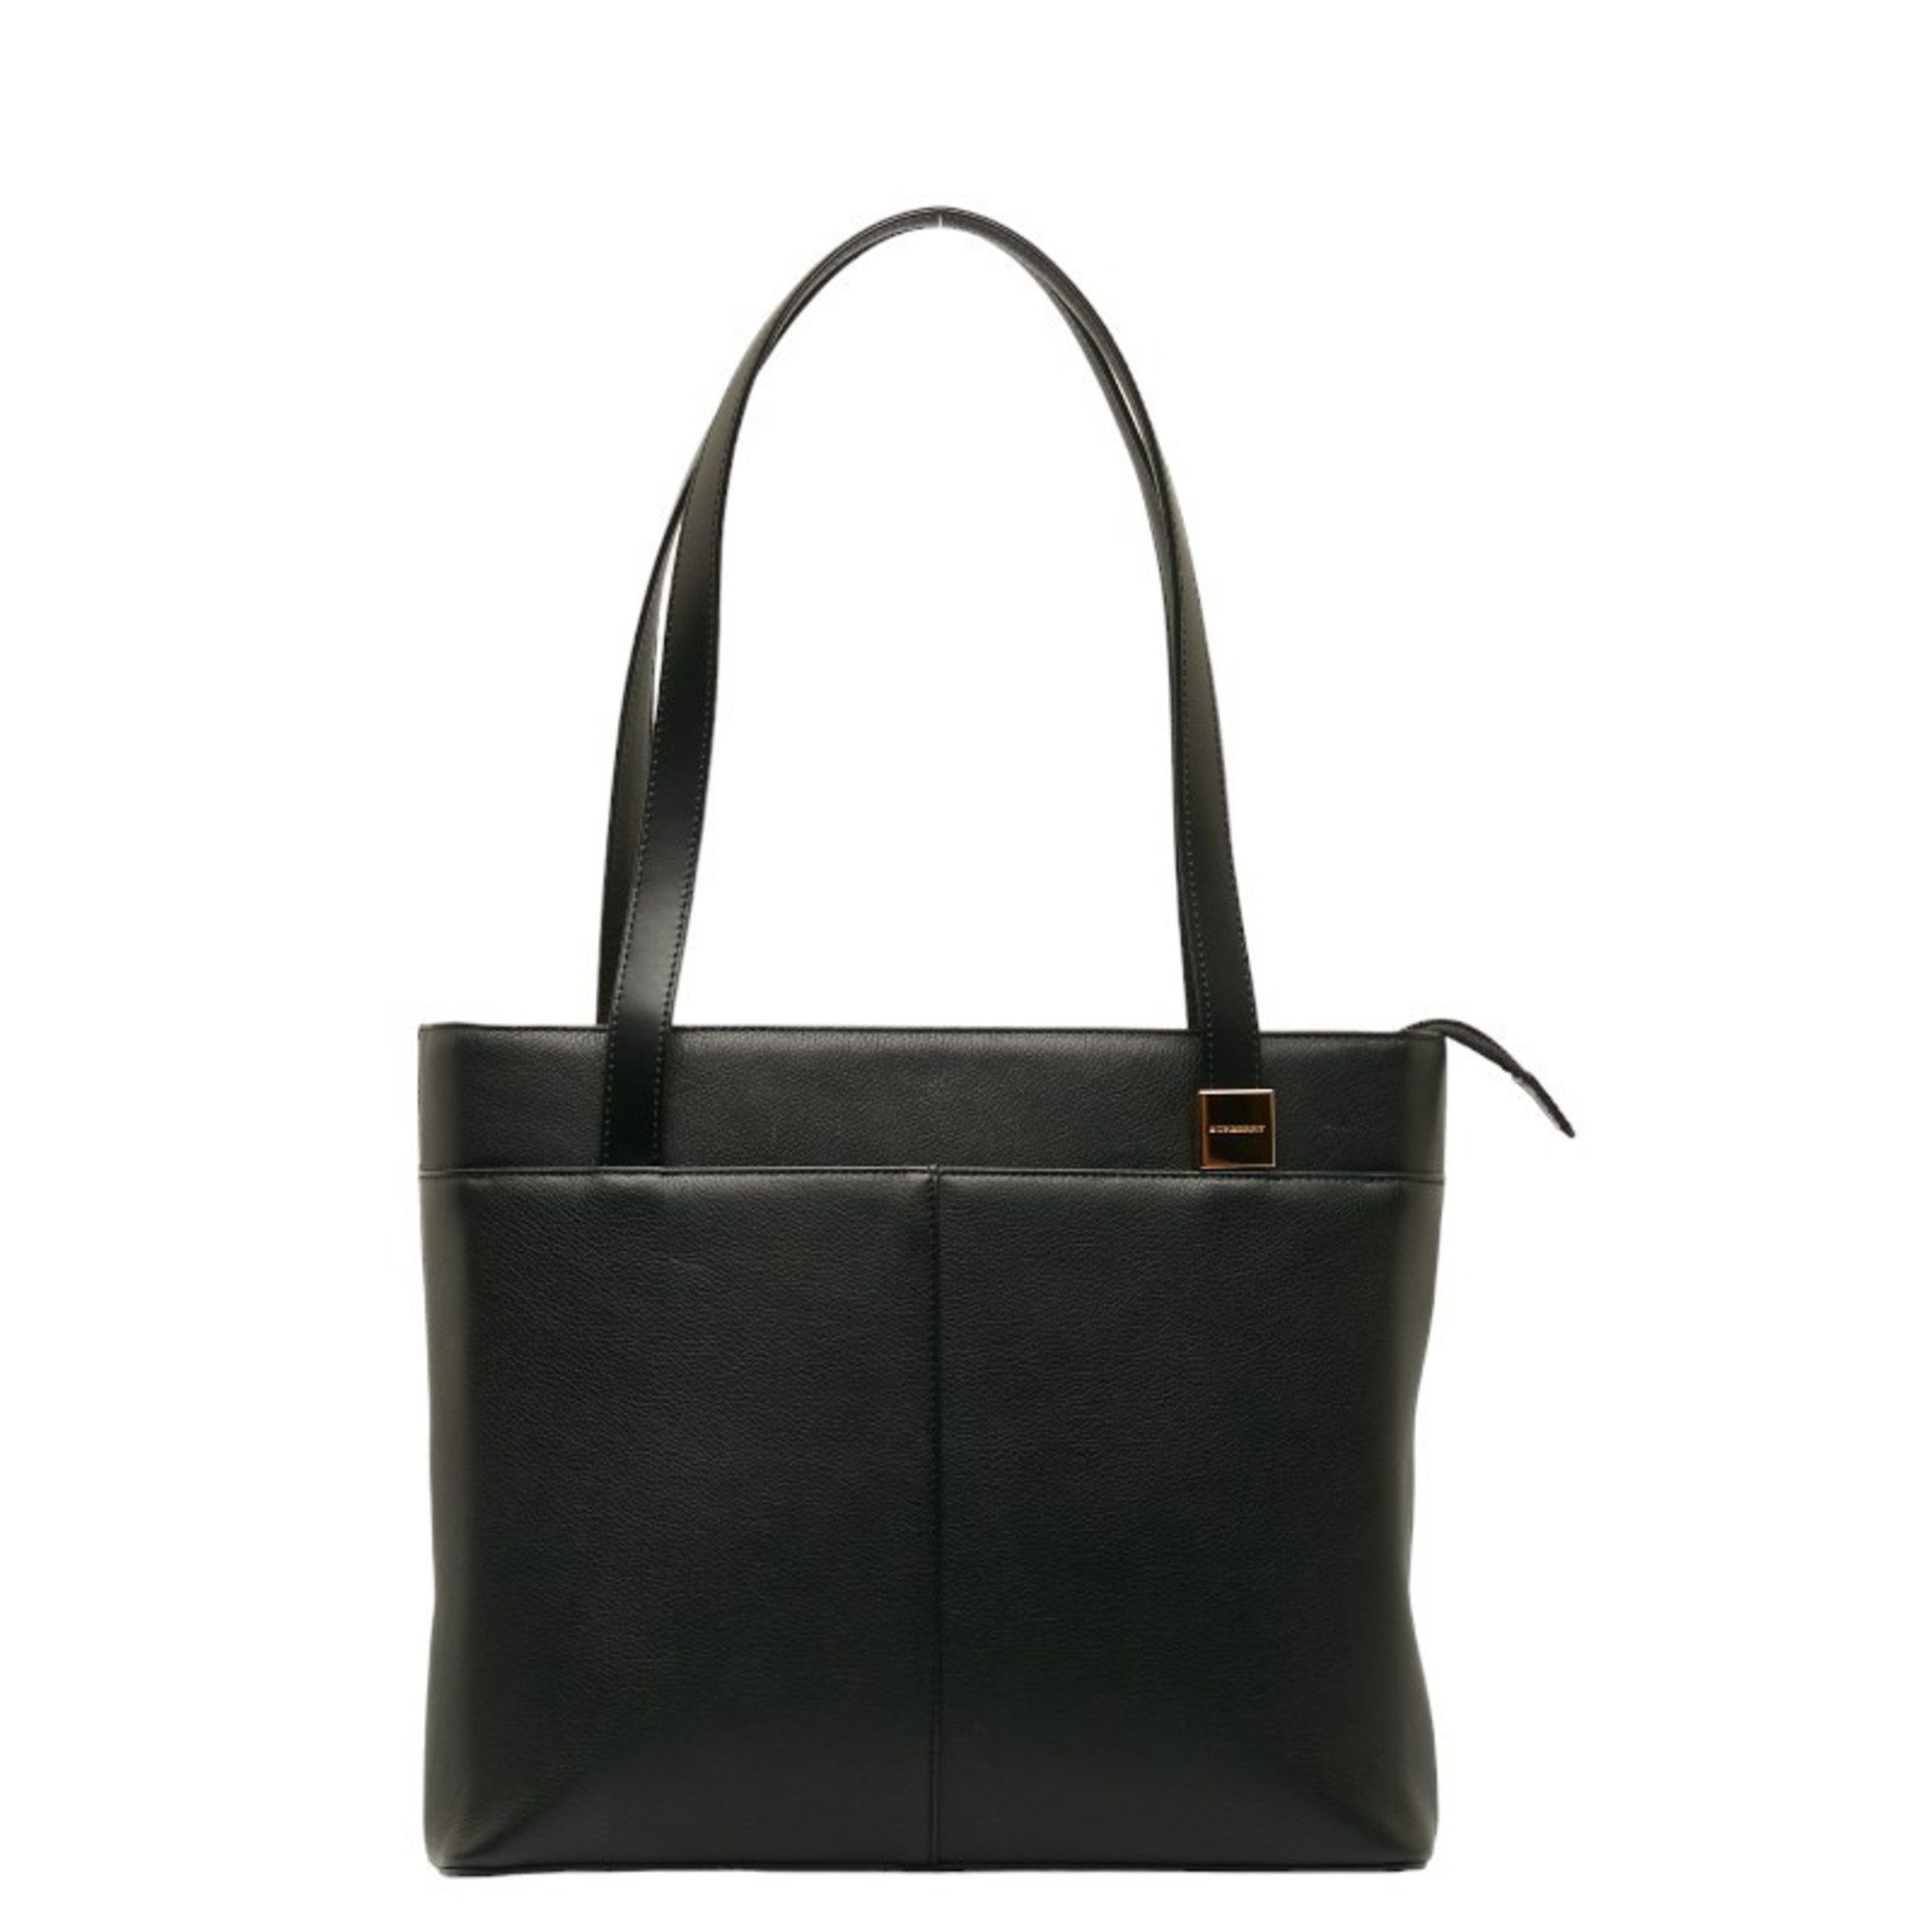 Burberry Nova Check Tote Bag Handbag Black Leather Women's BURBERRY